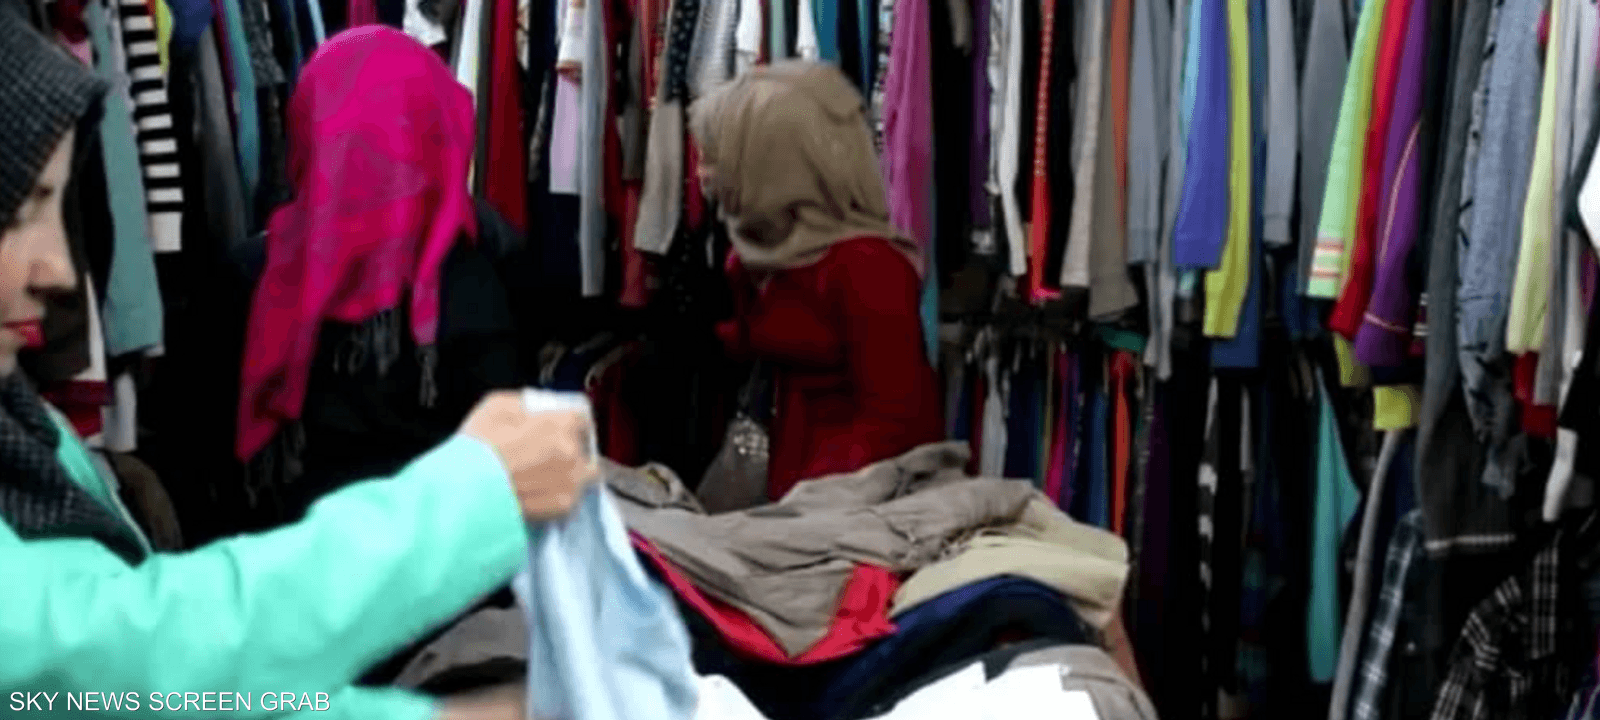 ارتفاع "جنوني" في أسعار الملابس المستعملة في سوريا